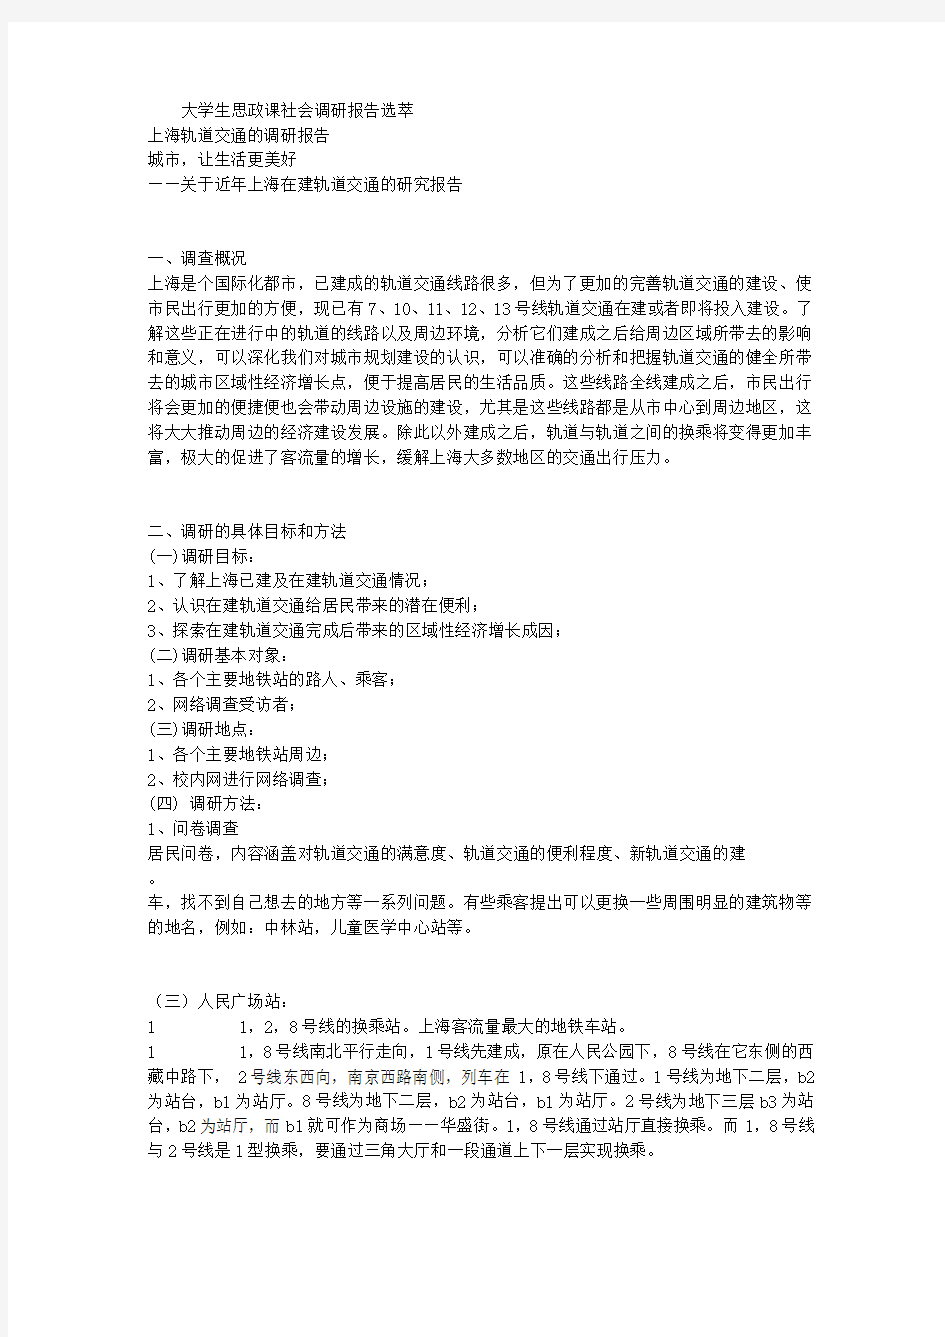 上海轨道交通的调研报告